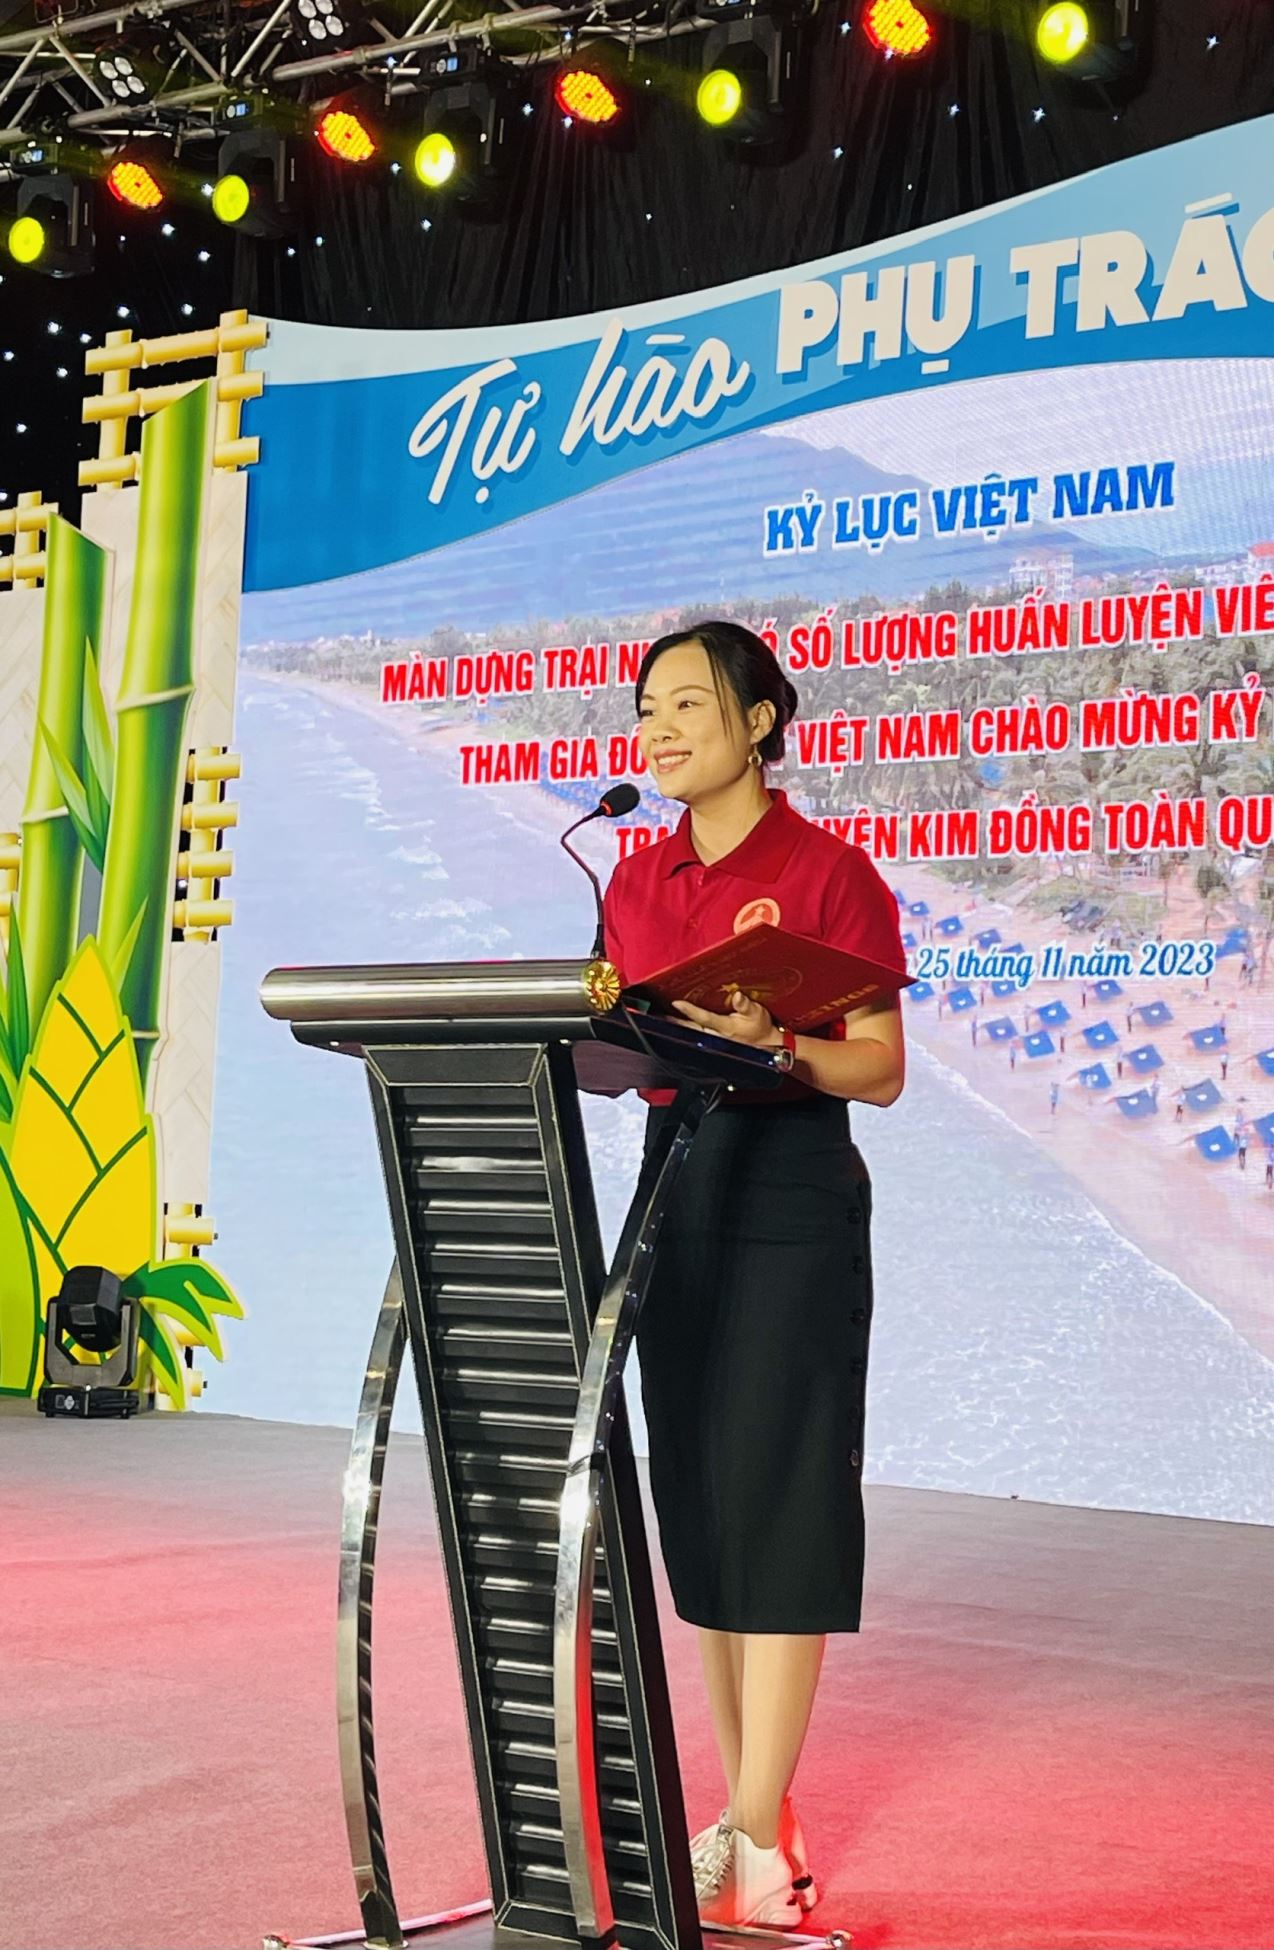 Bà Phạm Thị Vân - Phó Trưởng đại diện Miền Bắc Tổ chức Kỷ lục Việt Nam đại diện công bố quyết định xác lập Kỷ lục - Ảnh: VietKings.